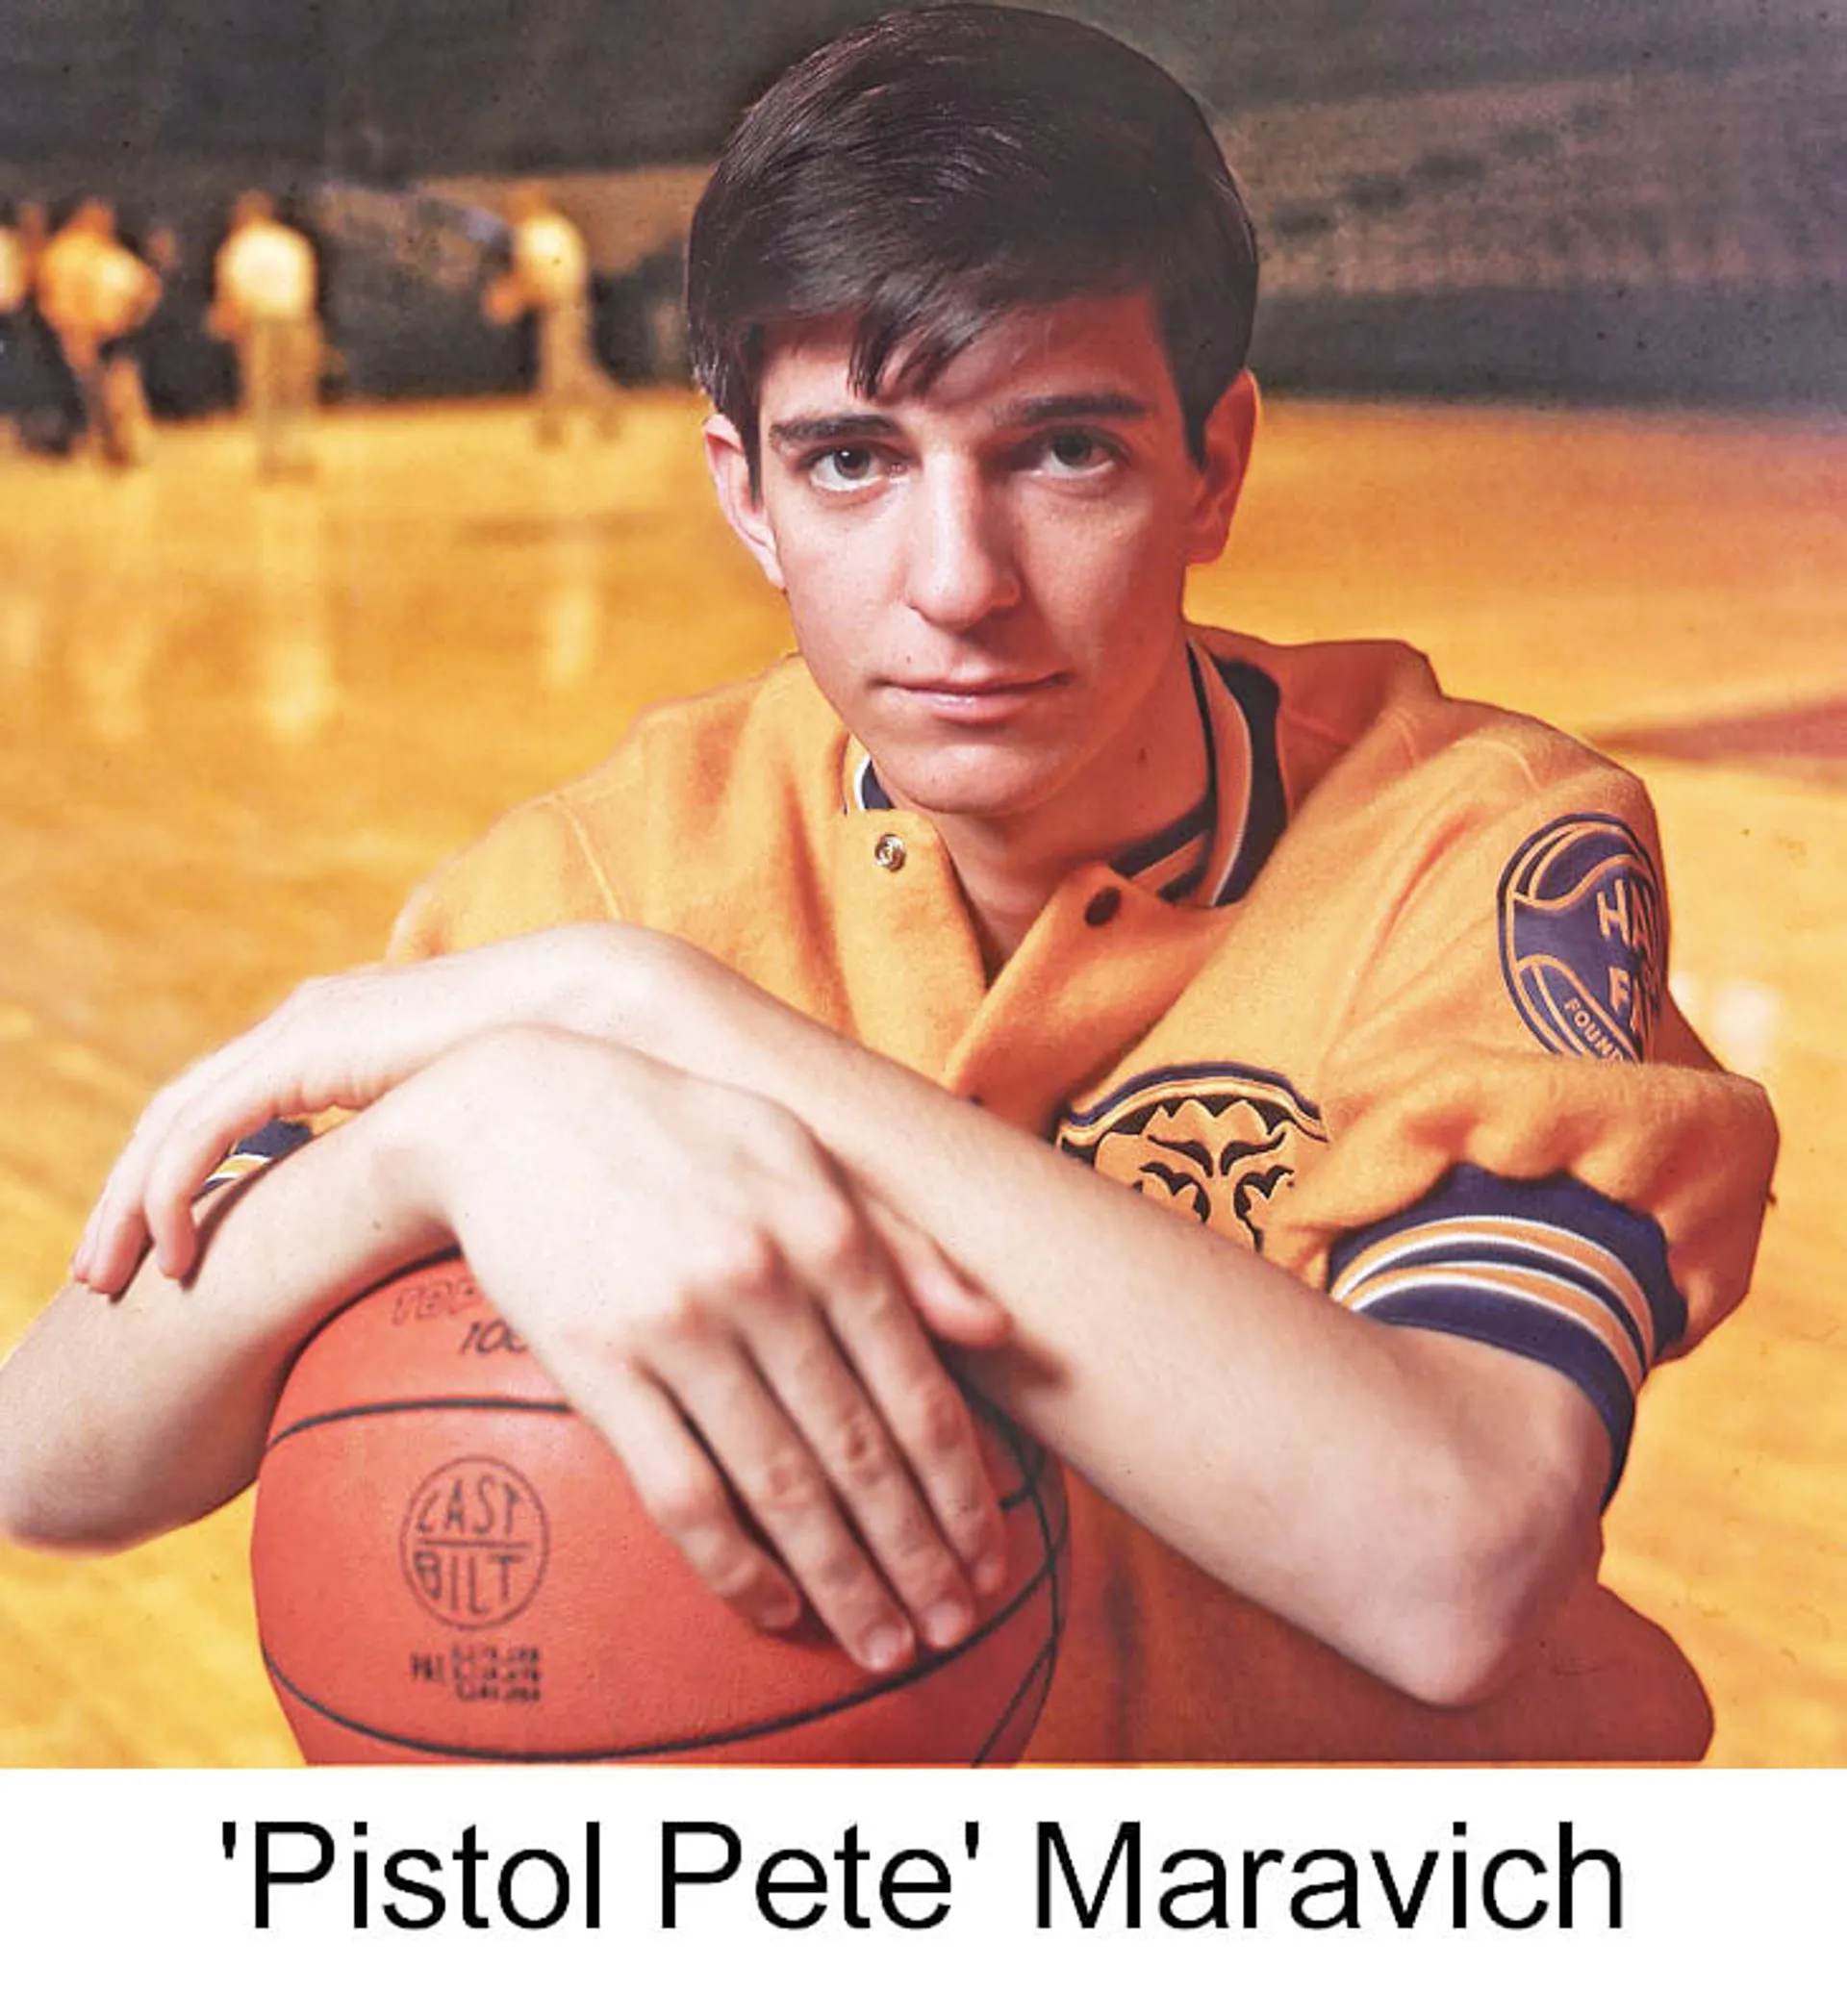 Pistol Pete Maravich